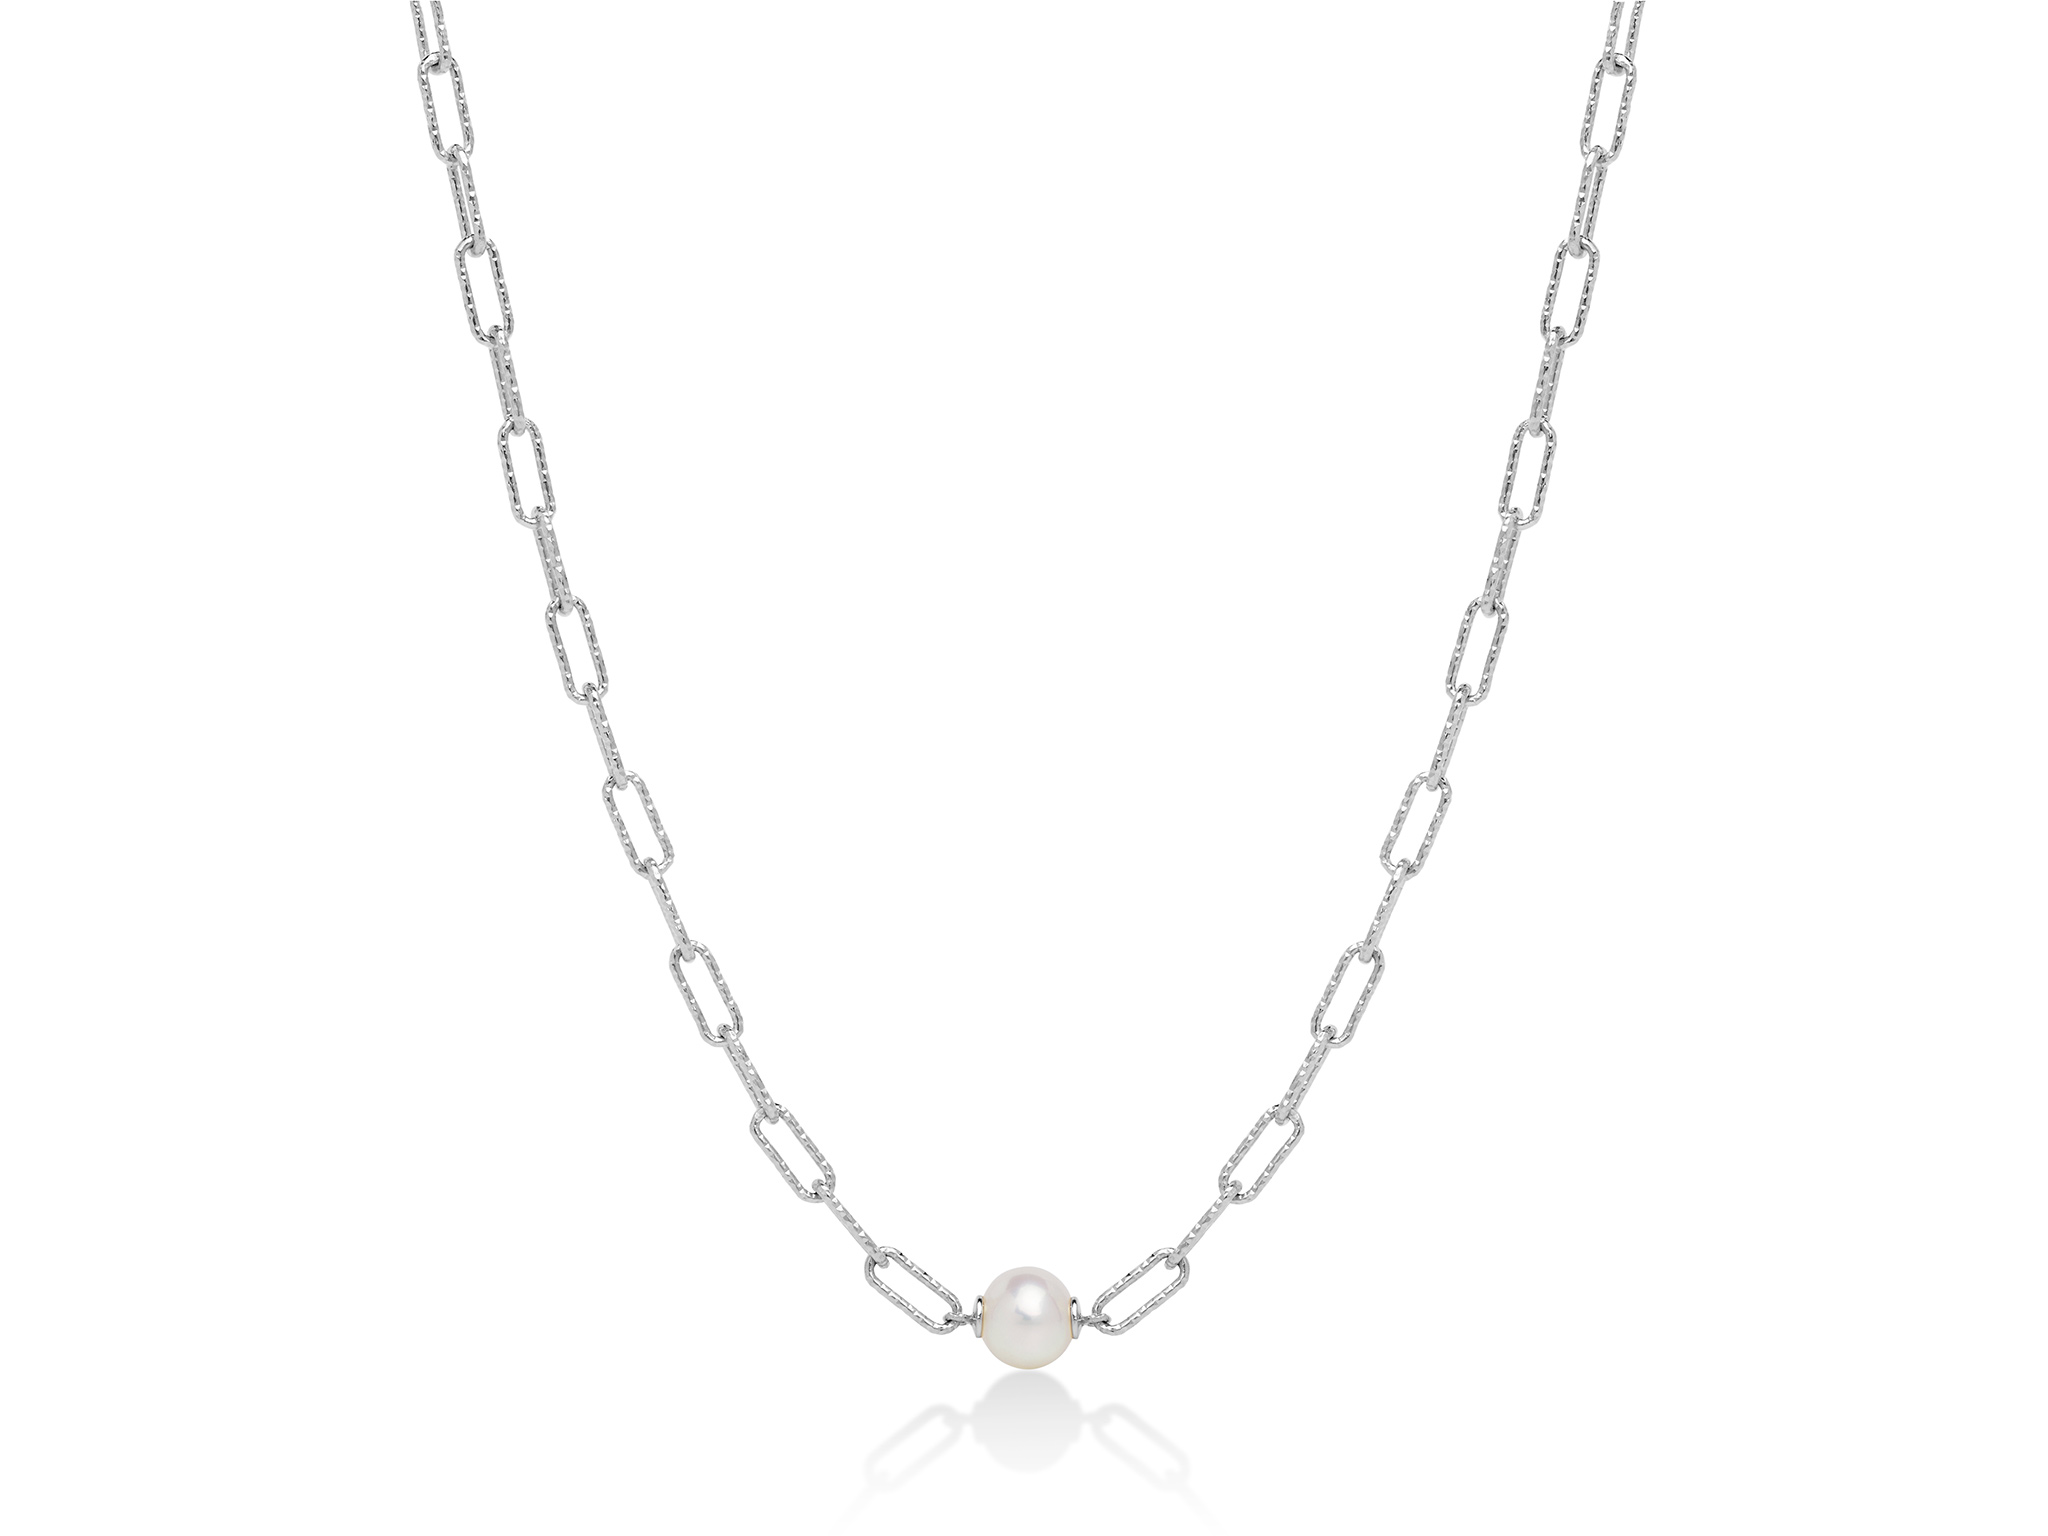 Collana con catena a maglia, in argento con perla. - PCL6021B